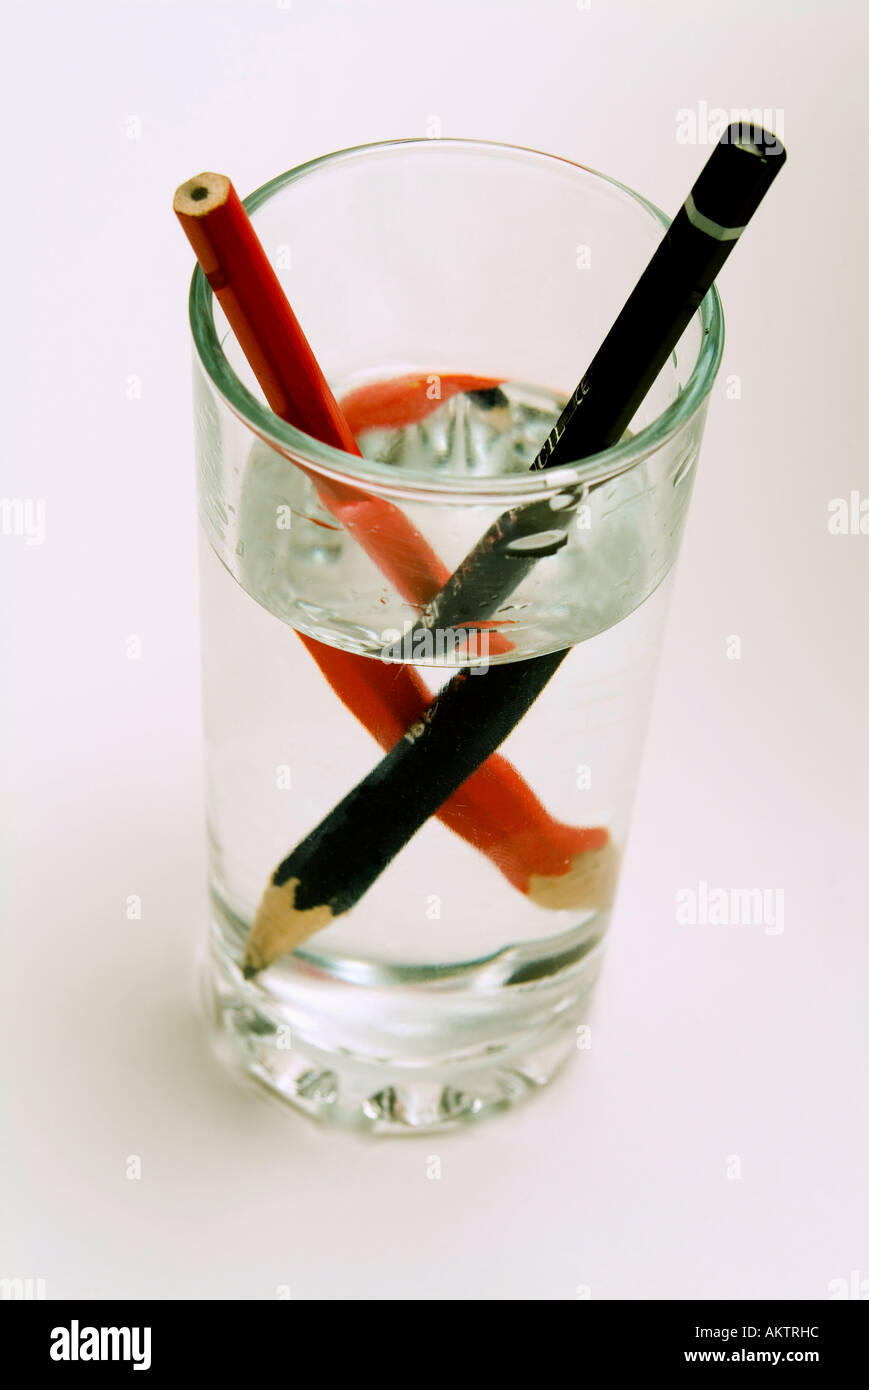 Zwei Stifte in einem Glas Wasser zeigt die optische Distoprtion, verursacht durch Brechung des Bildes Stockfoto